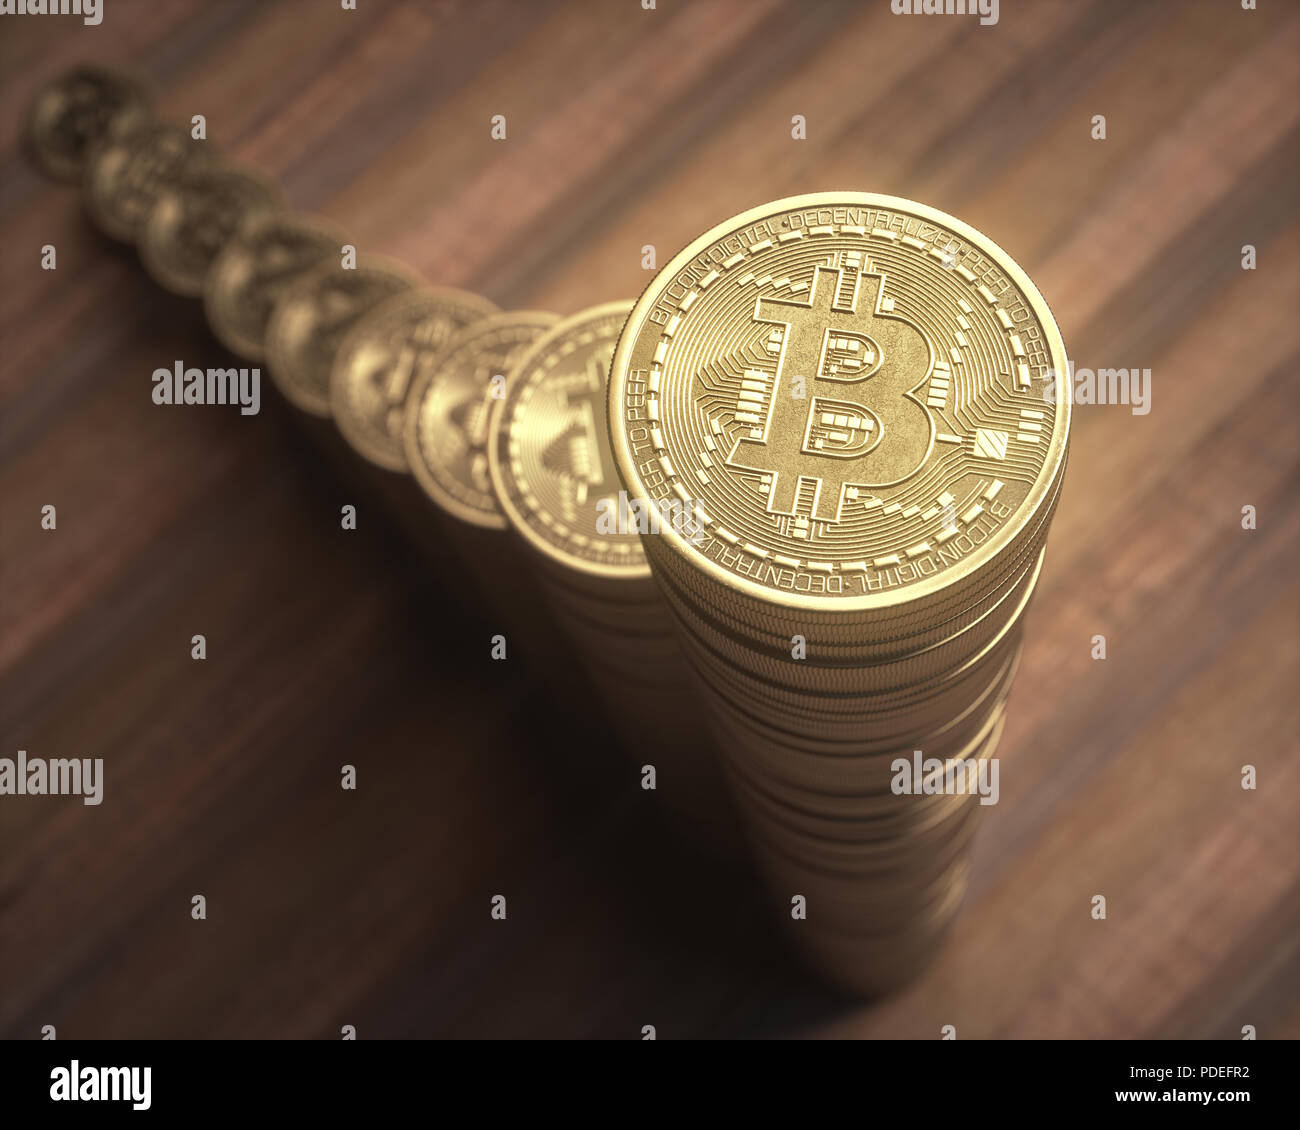 Bitcoin Cryptocurrency entreprise. La pile de pièces de monnaie numérique. L'échange d'argent numérique peer to peer. Concept d'affaires financières. Banque D'Images